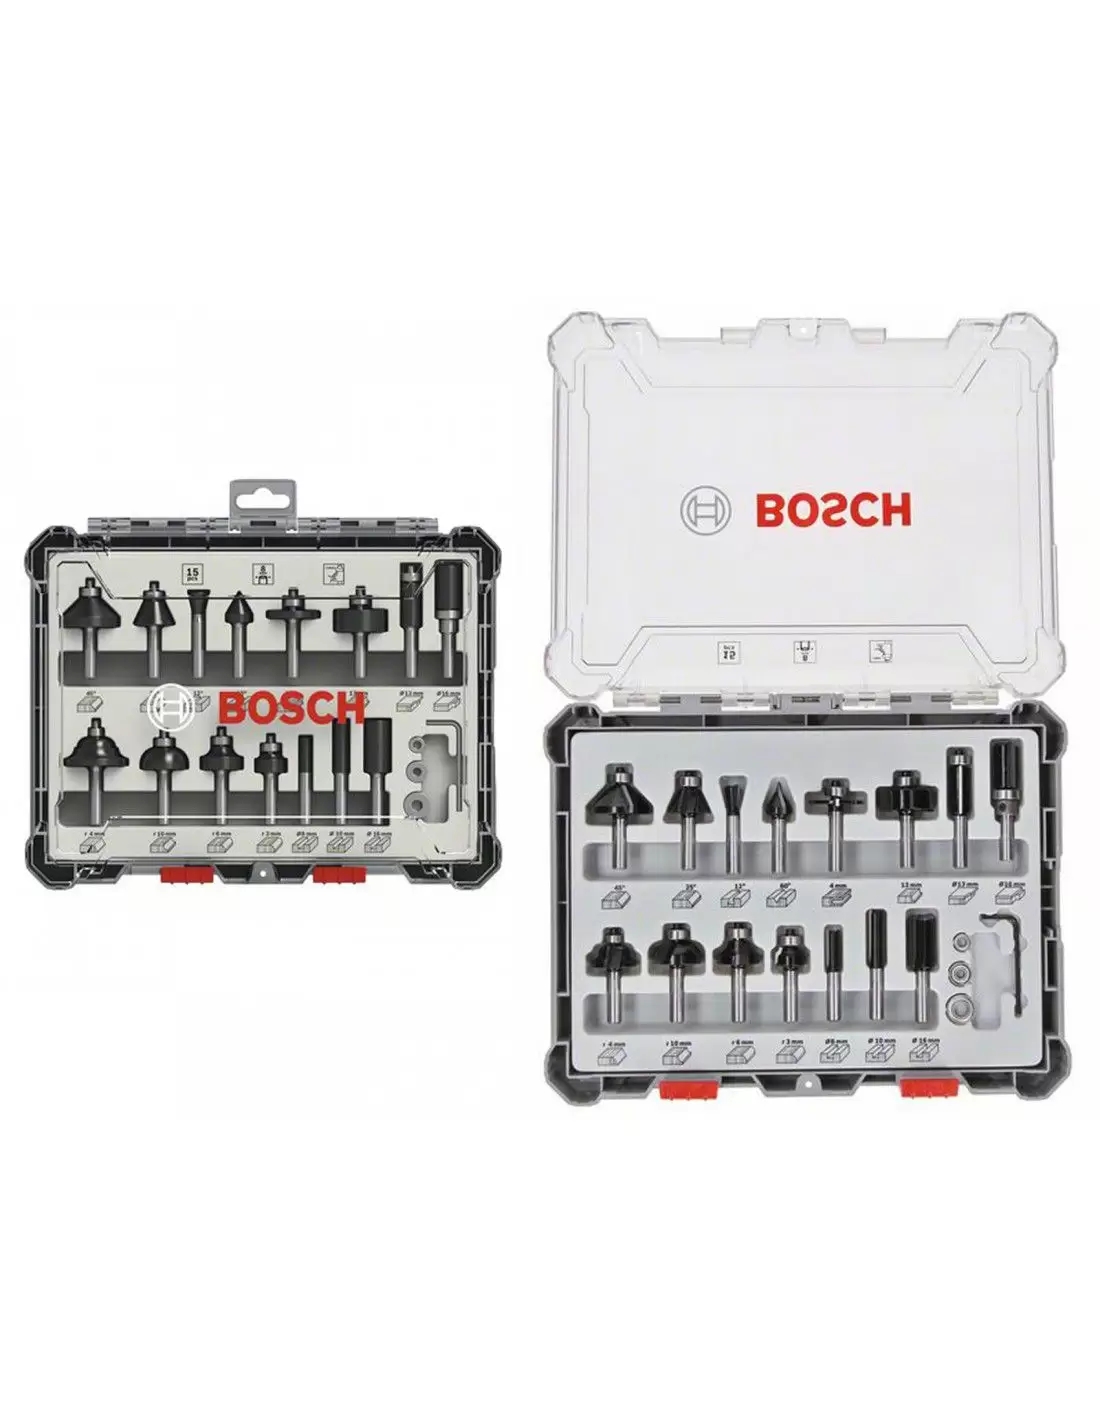 Bosch Professional coffret de fraises 8mm set de 15